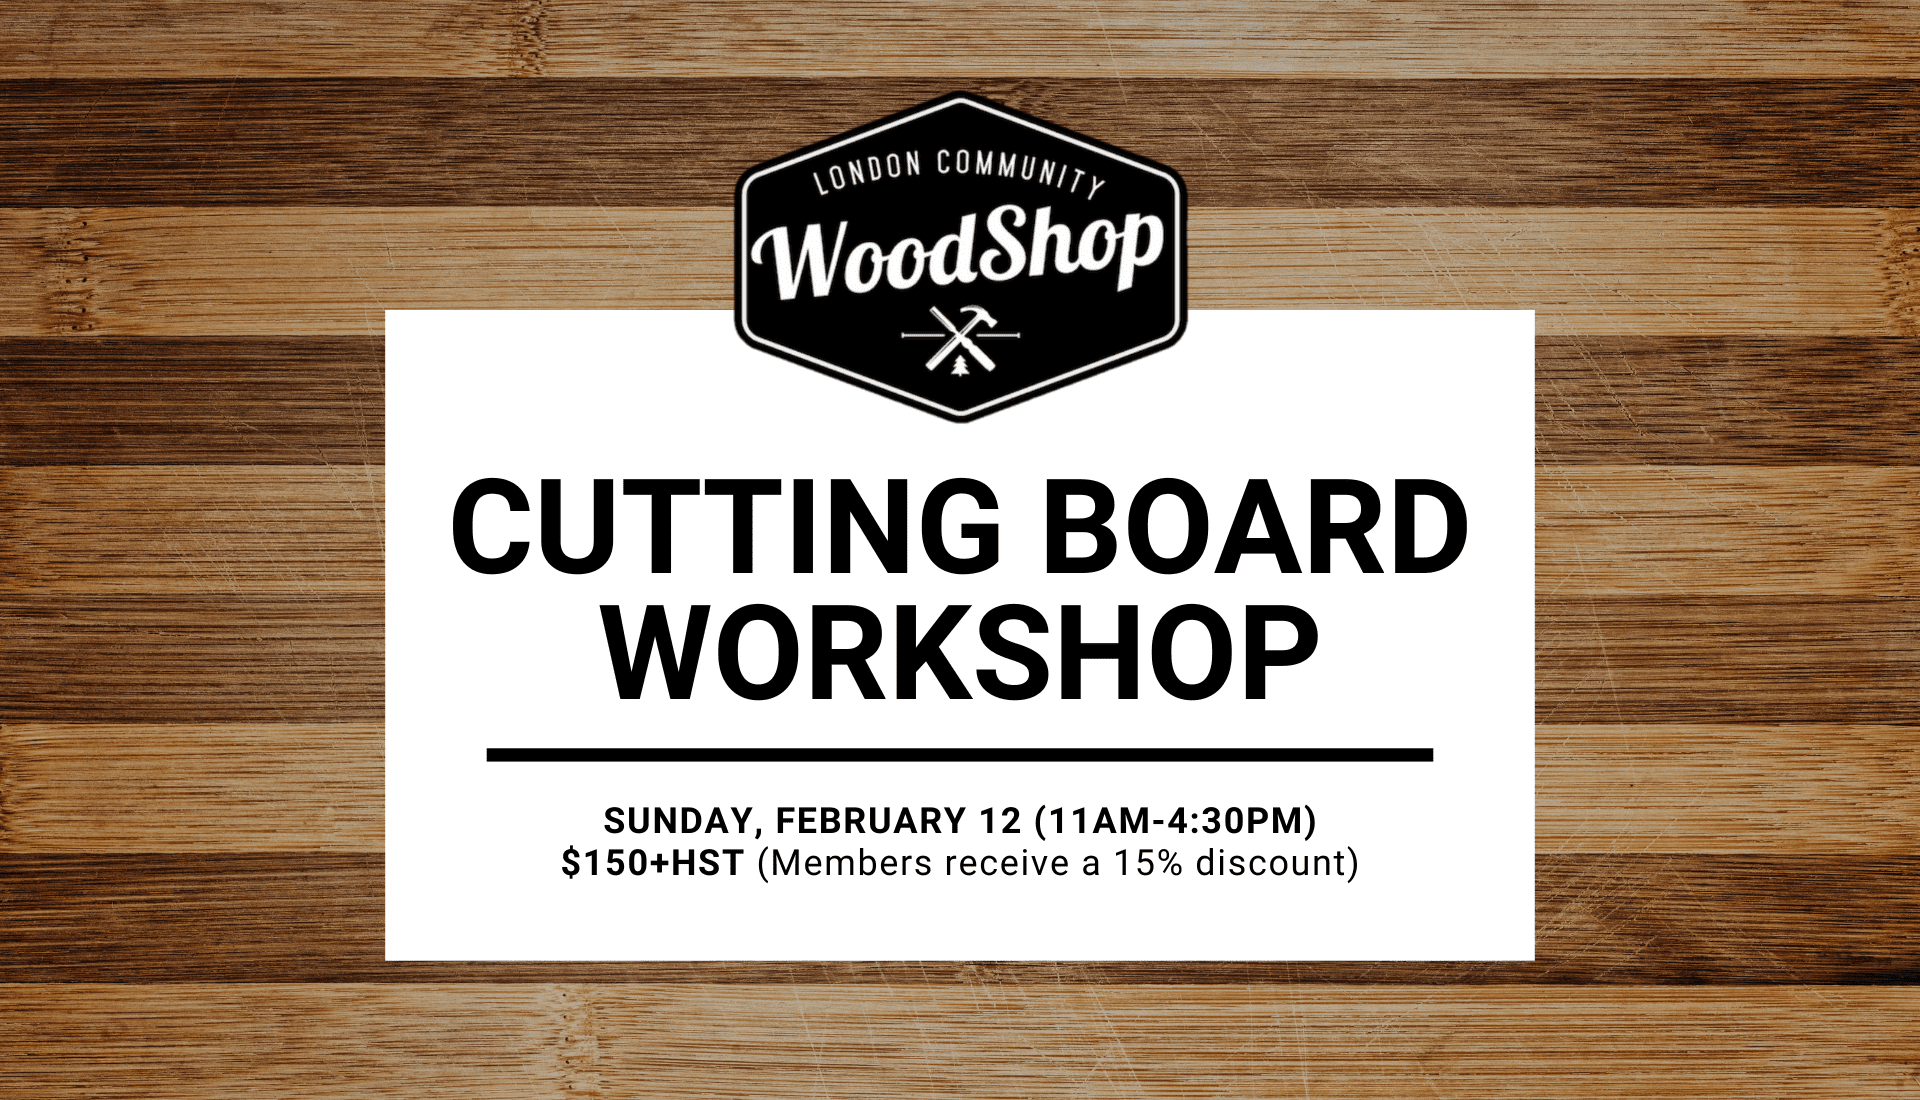 Cutting Board Workshop - Sunday, February 12